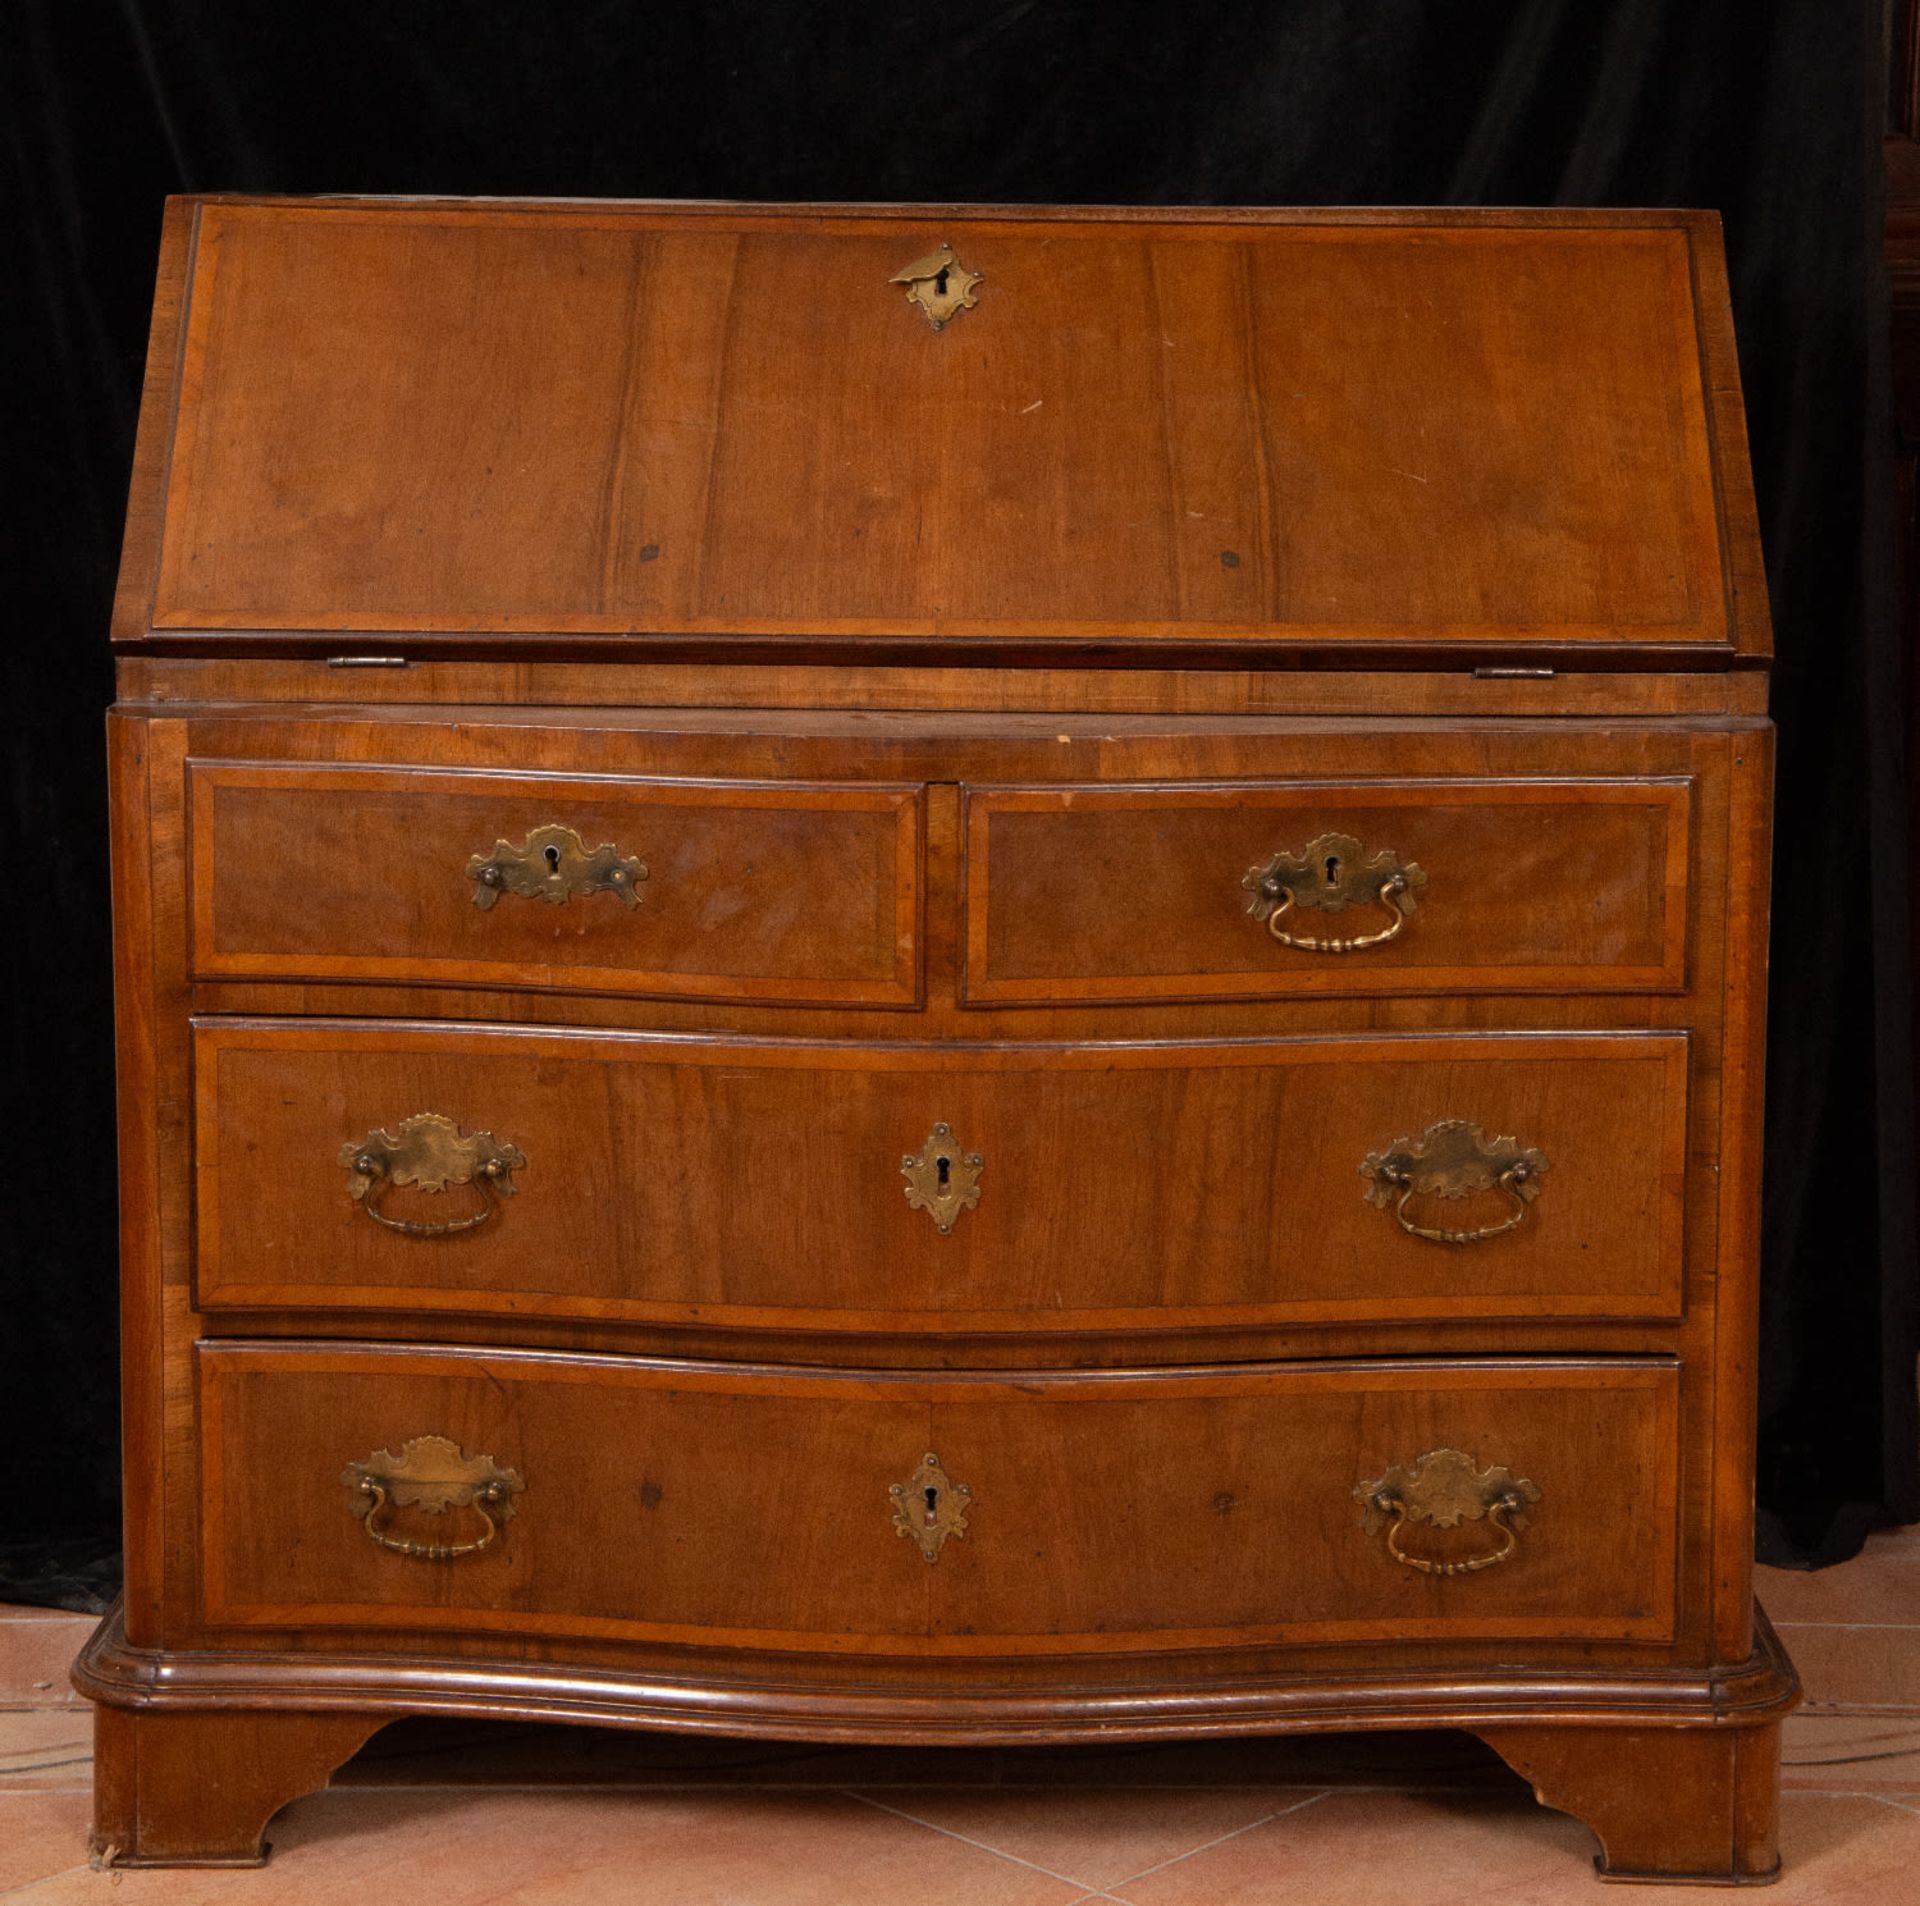 Bureau Carlos III - Carlos IV transition desk in oak wood and walnut and fruit marquetry, 18th centu